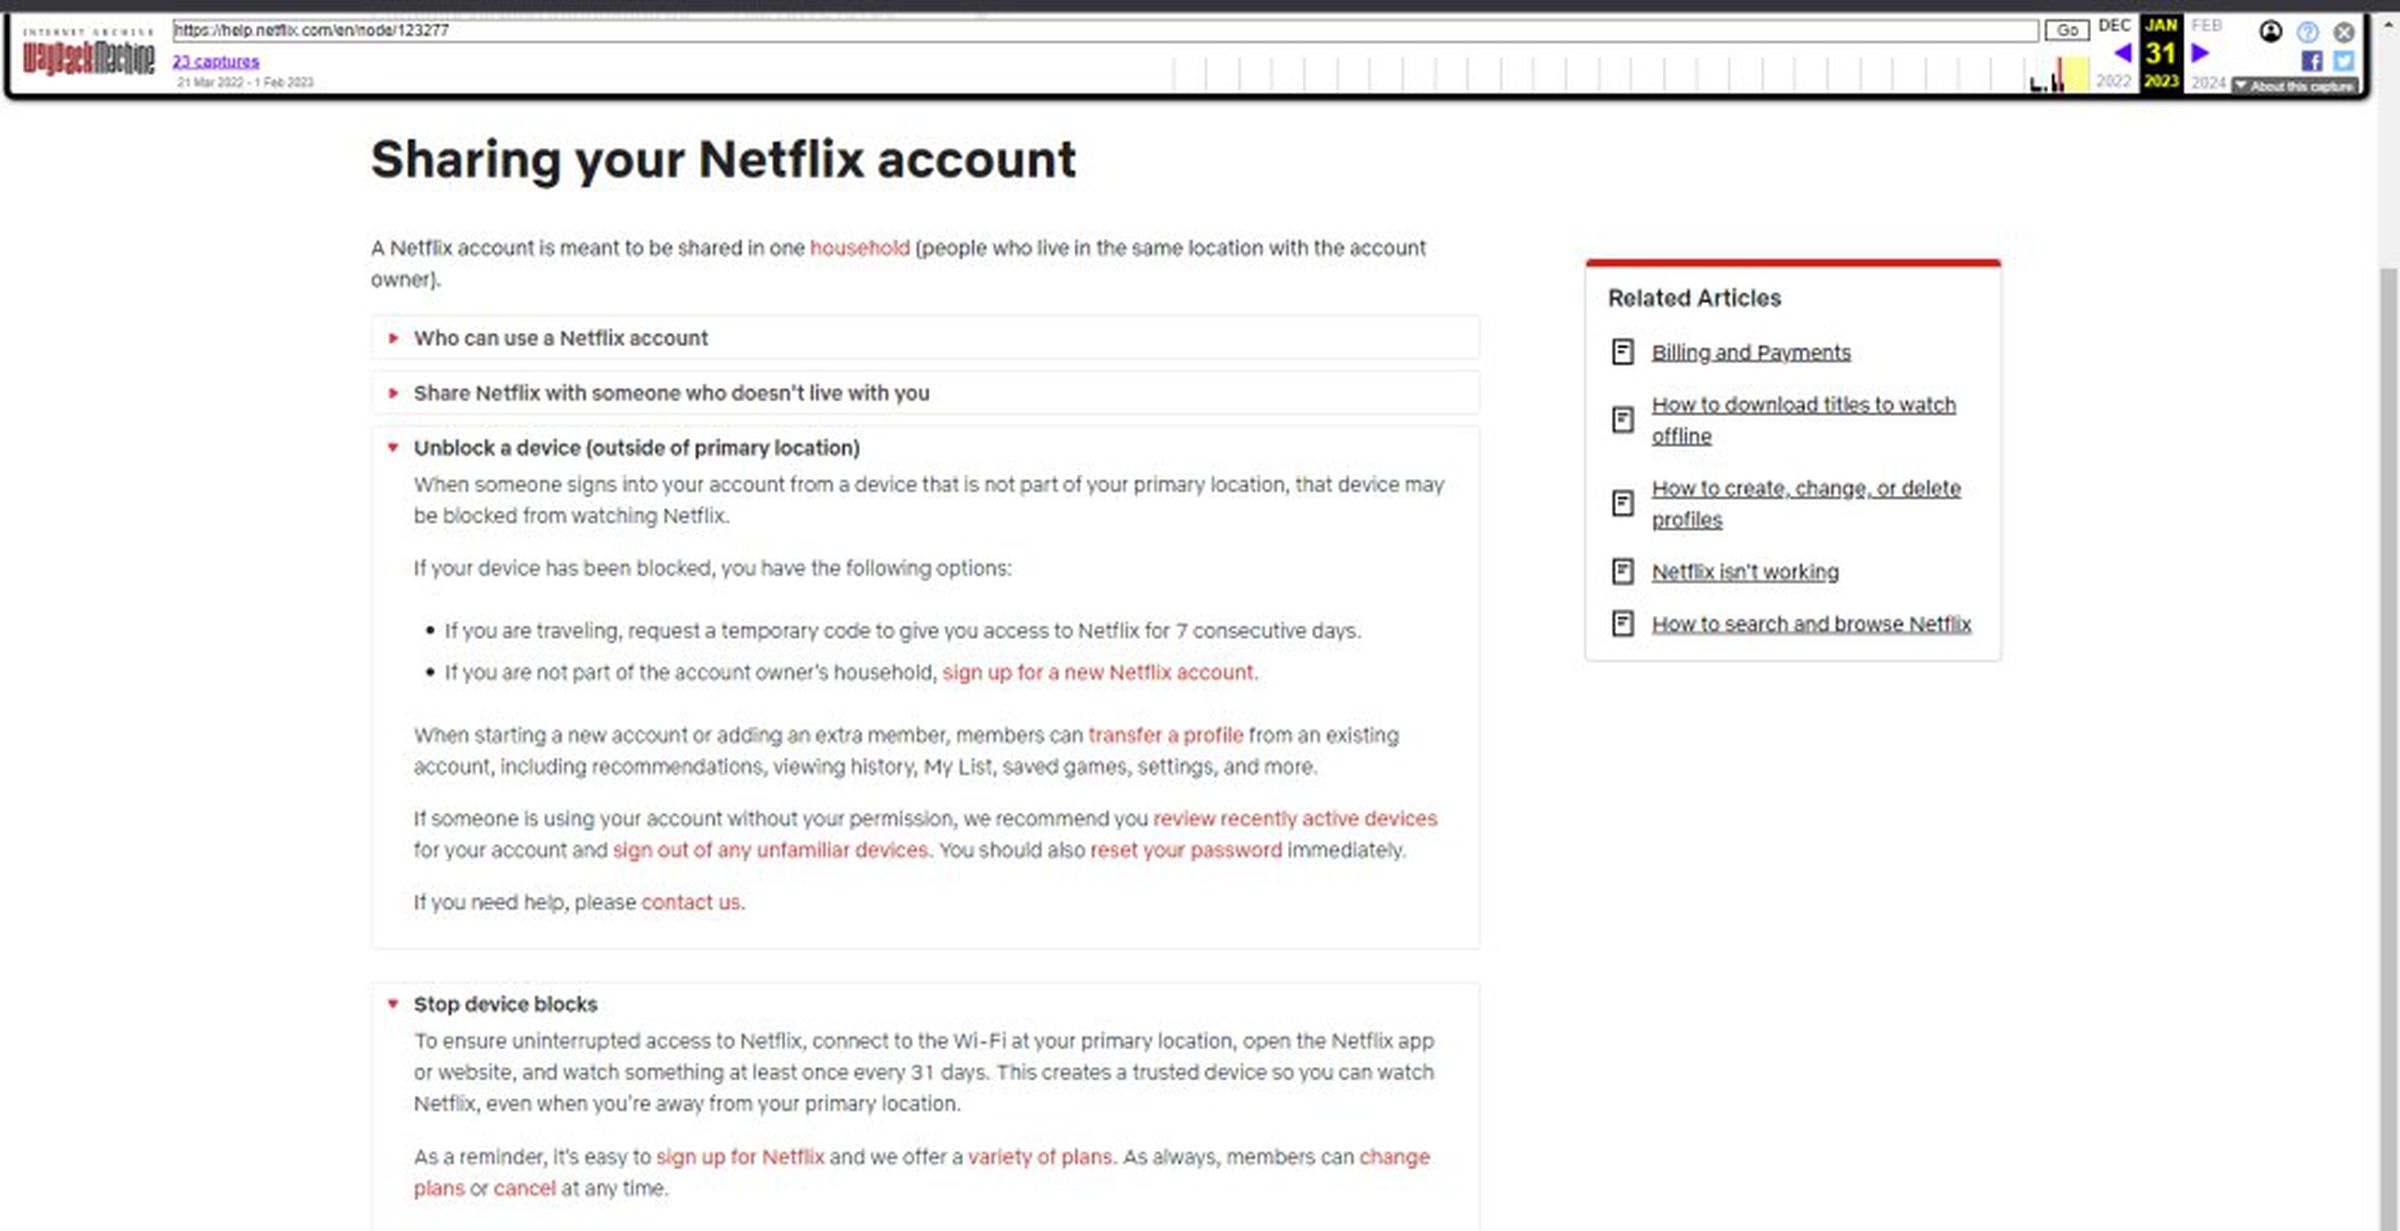 A página de suporte arquivada informa que a Netflix pode bloquear um dispositivo 